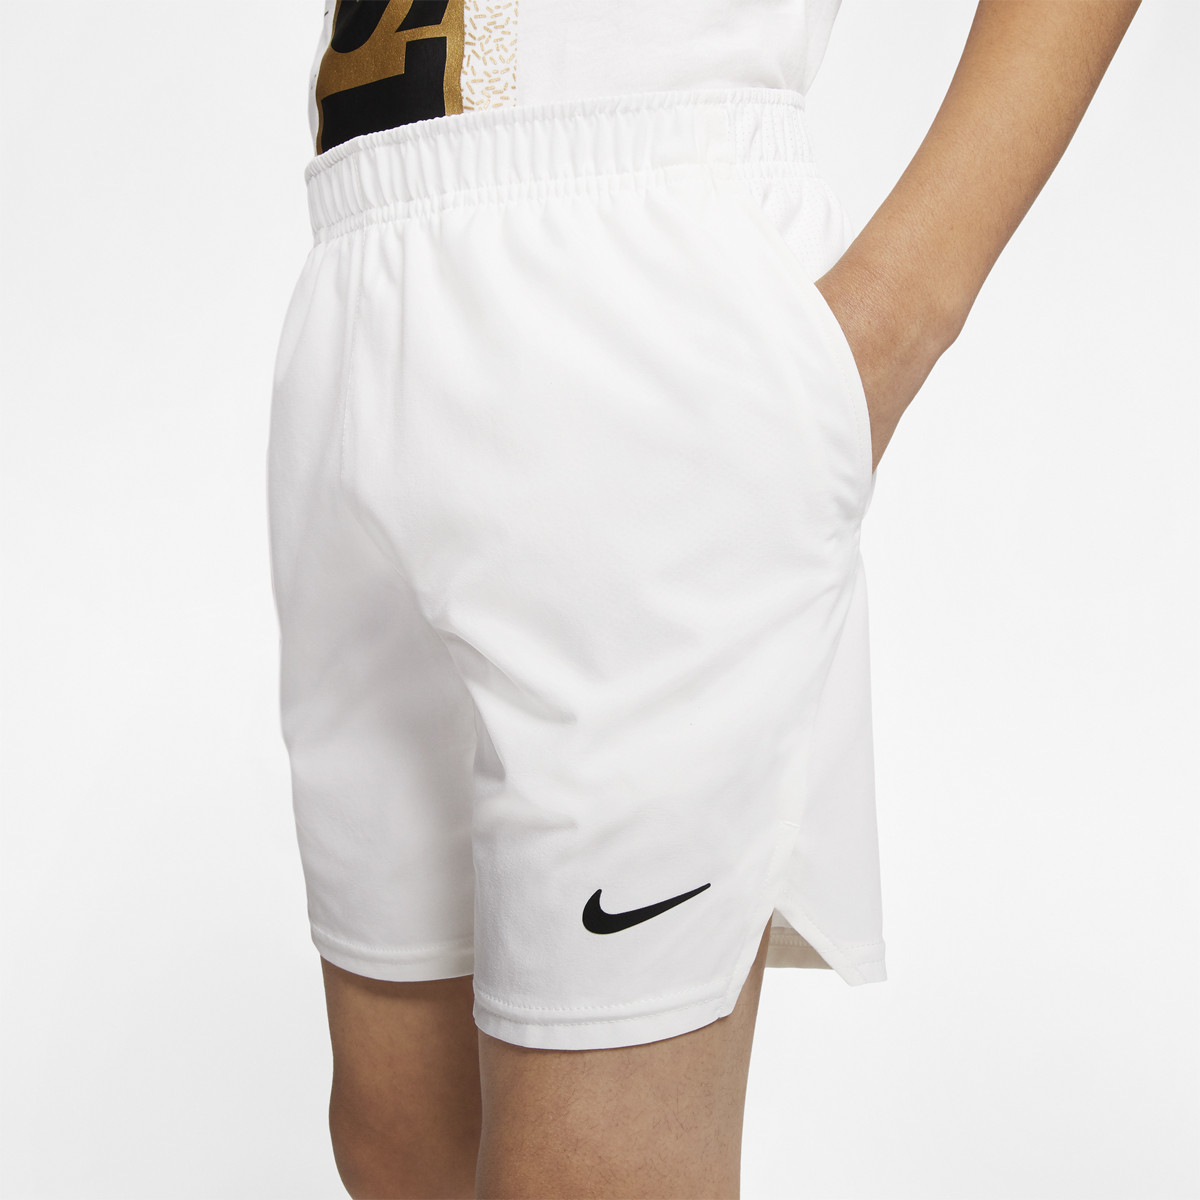 Boys Nike clothes conbral.com.br